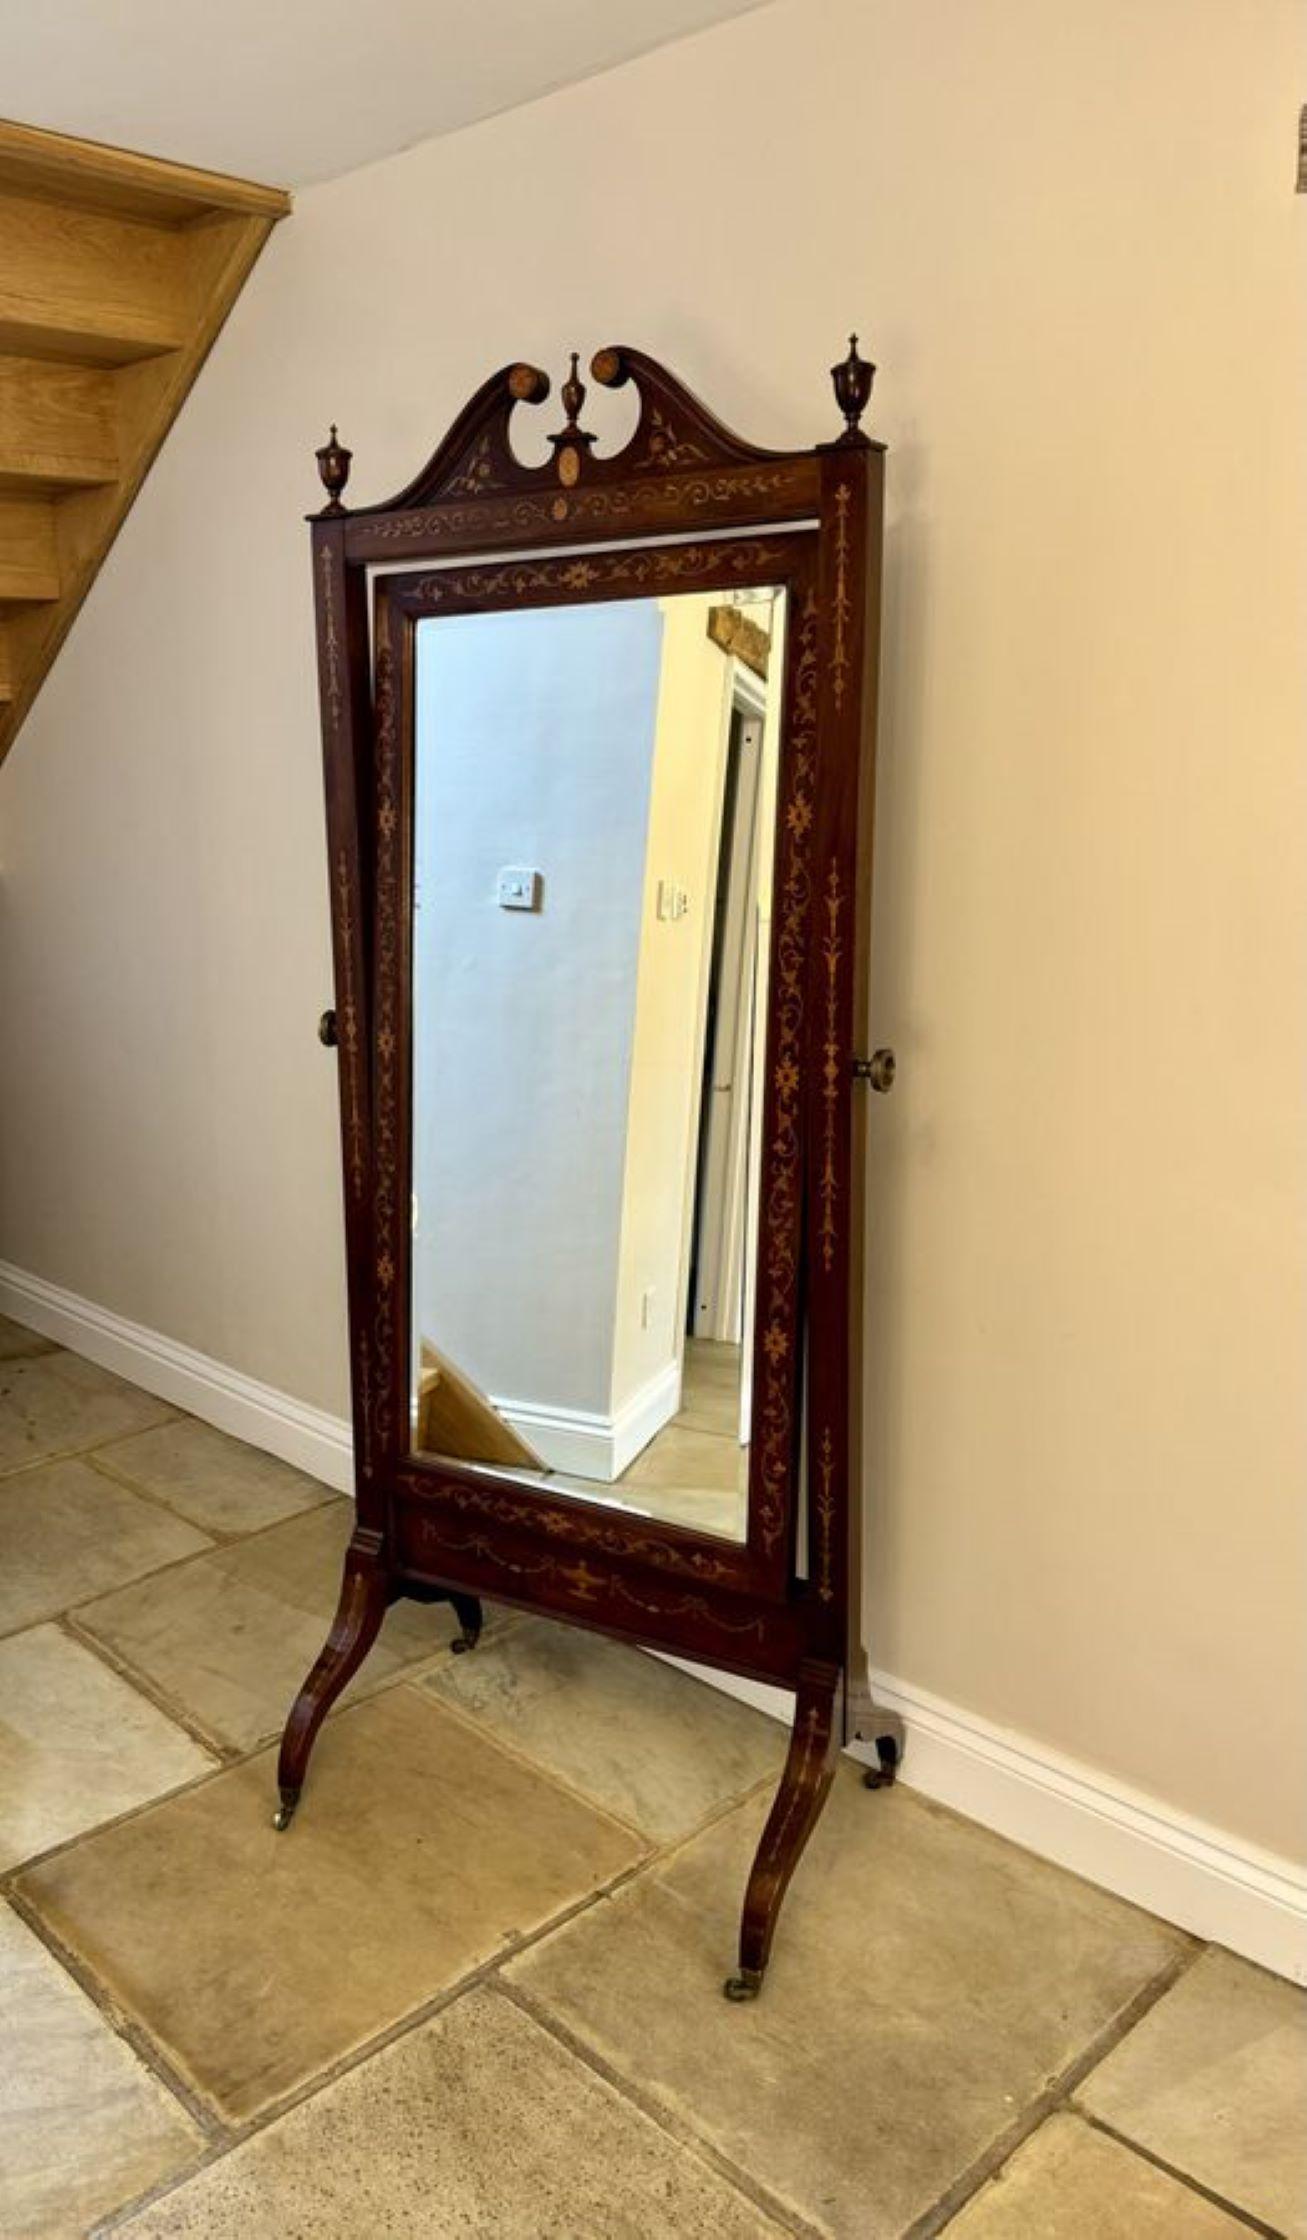 Superb Qualität antiken viktorianischen Mahagoni eingelegten Cheval Spiegel, mit einer hervorragenden Qualität Mahagoni eingelegten Schwanenhals Giebel über einem abgeschrägten Rand verstellbaren Spiegel in einem schönen Mahagoni eingelegten Rahmen,